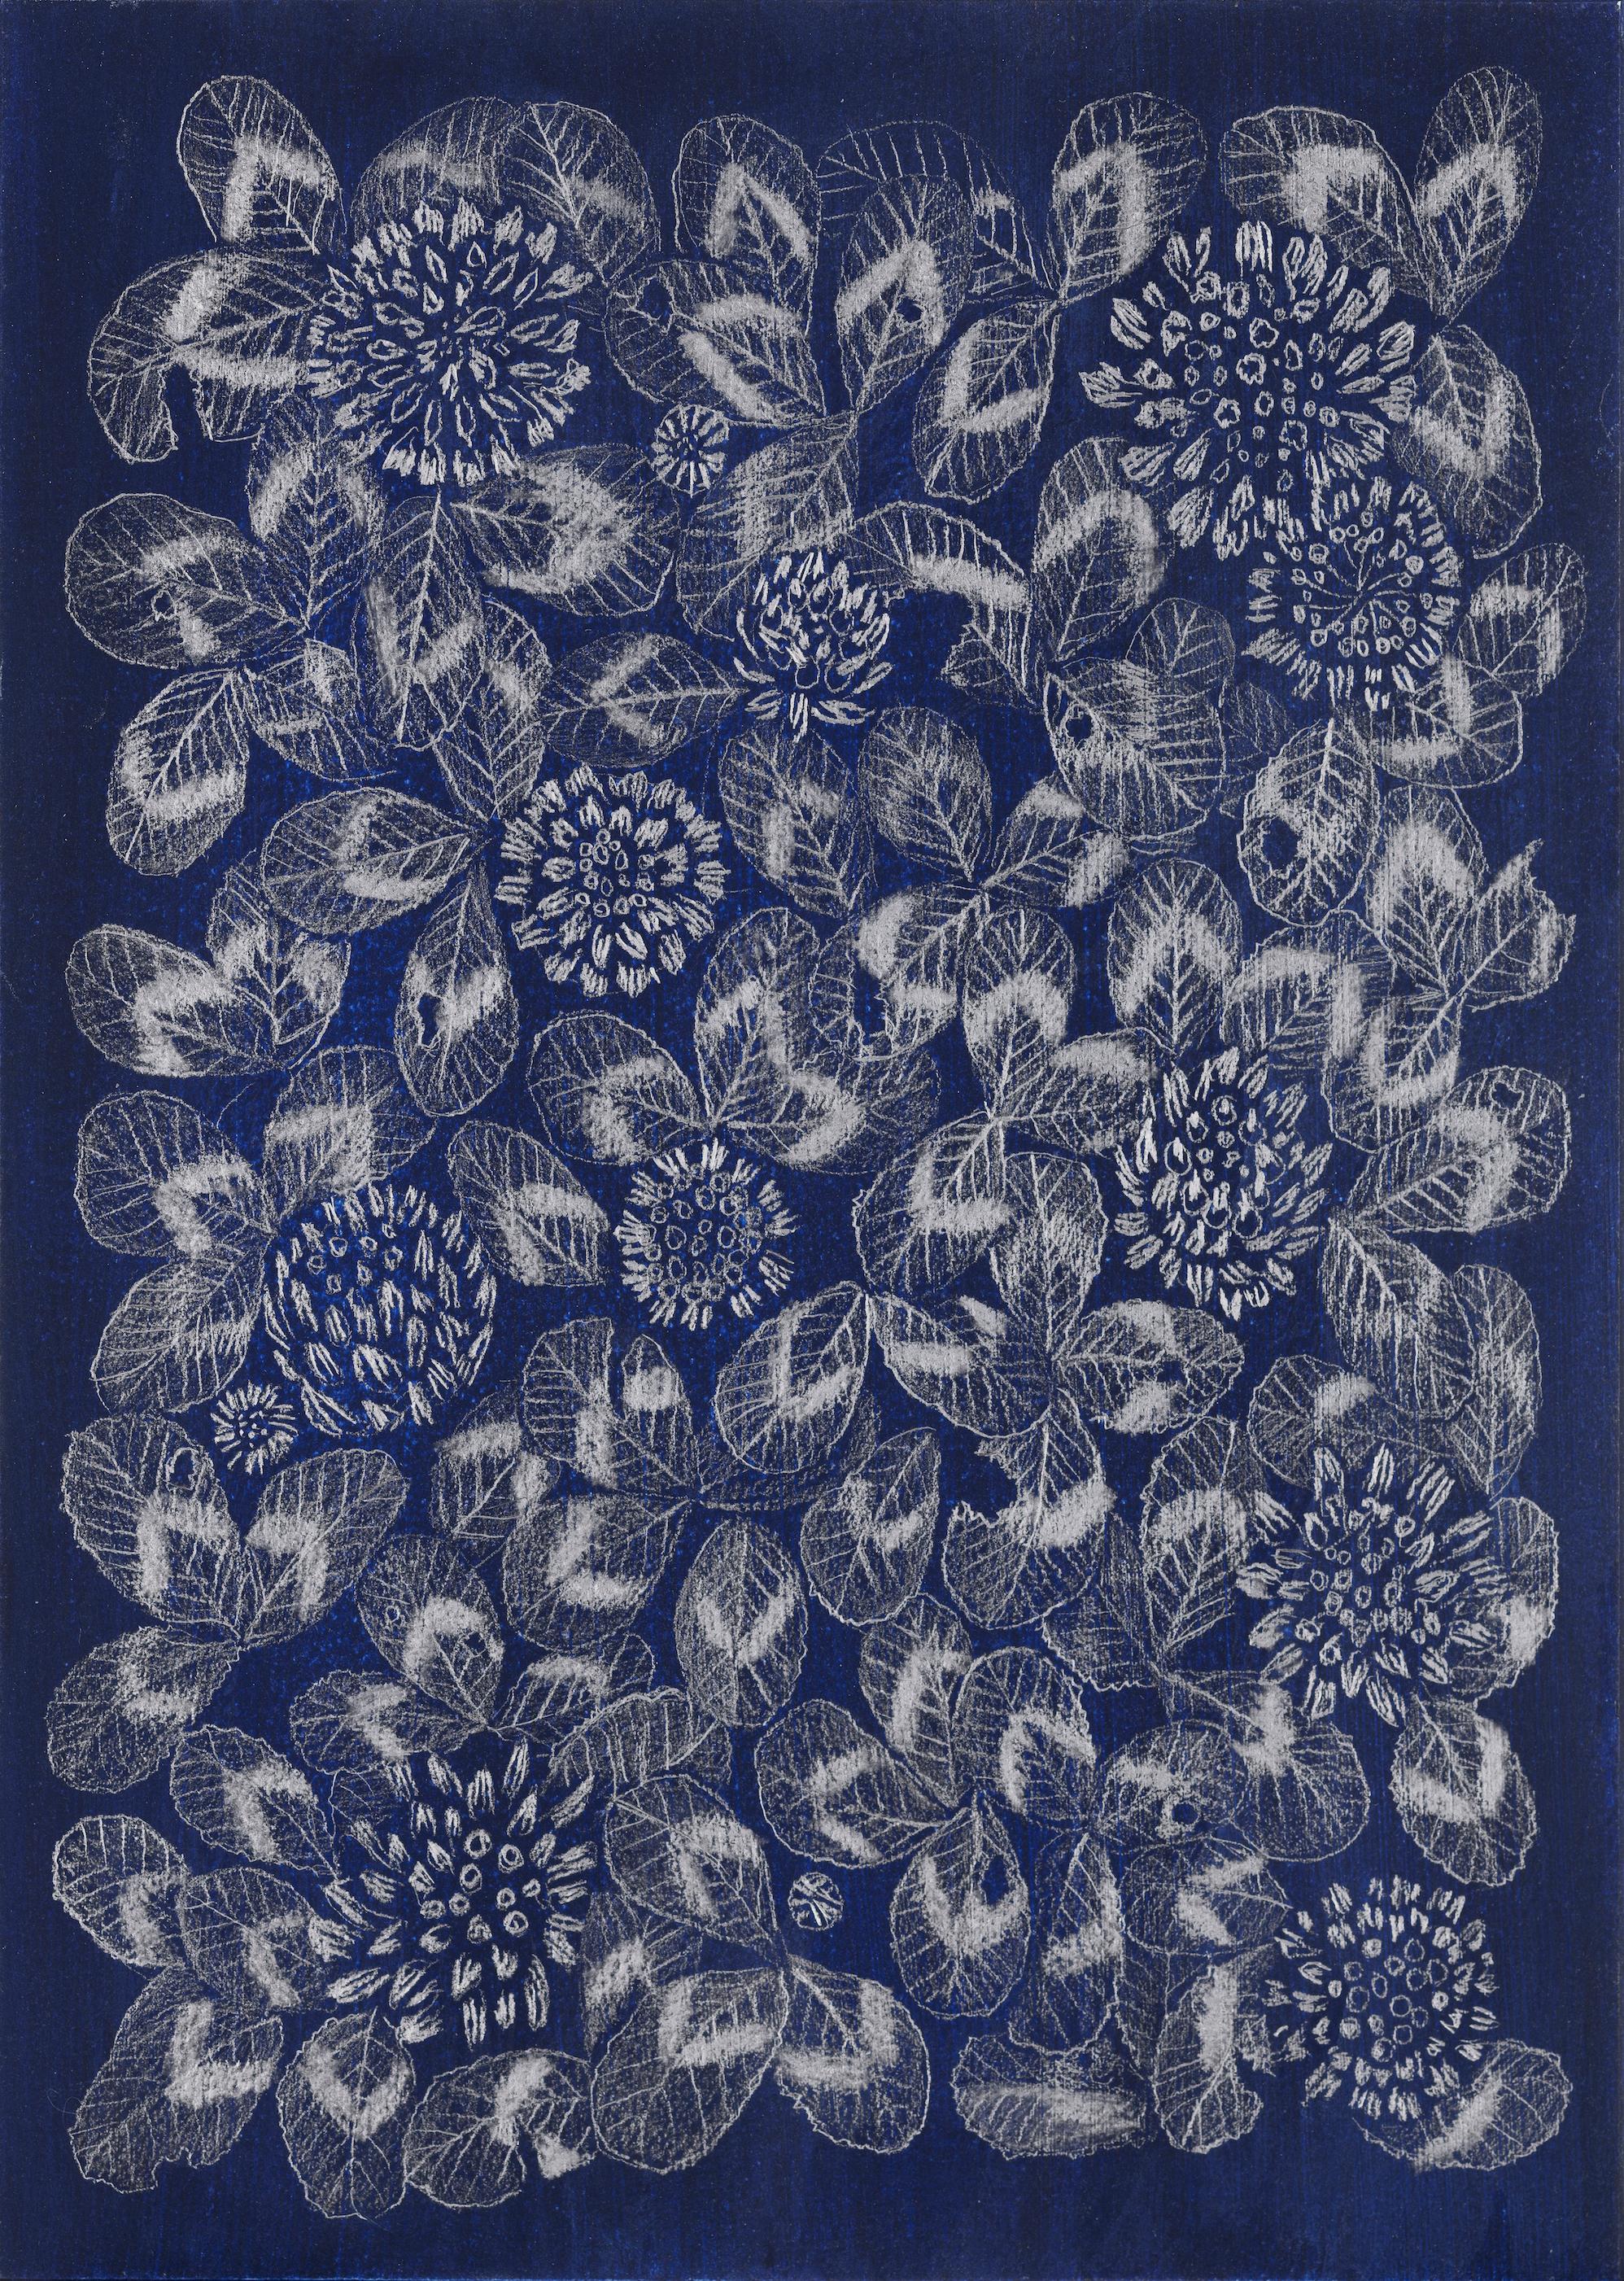 Margot Glass Still-Life - Blue Clover 2, patterned floral still life drawing